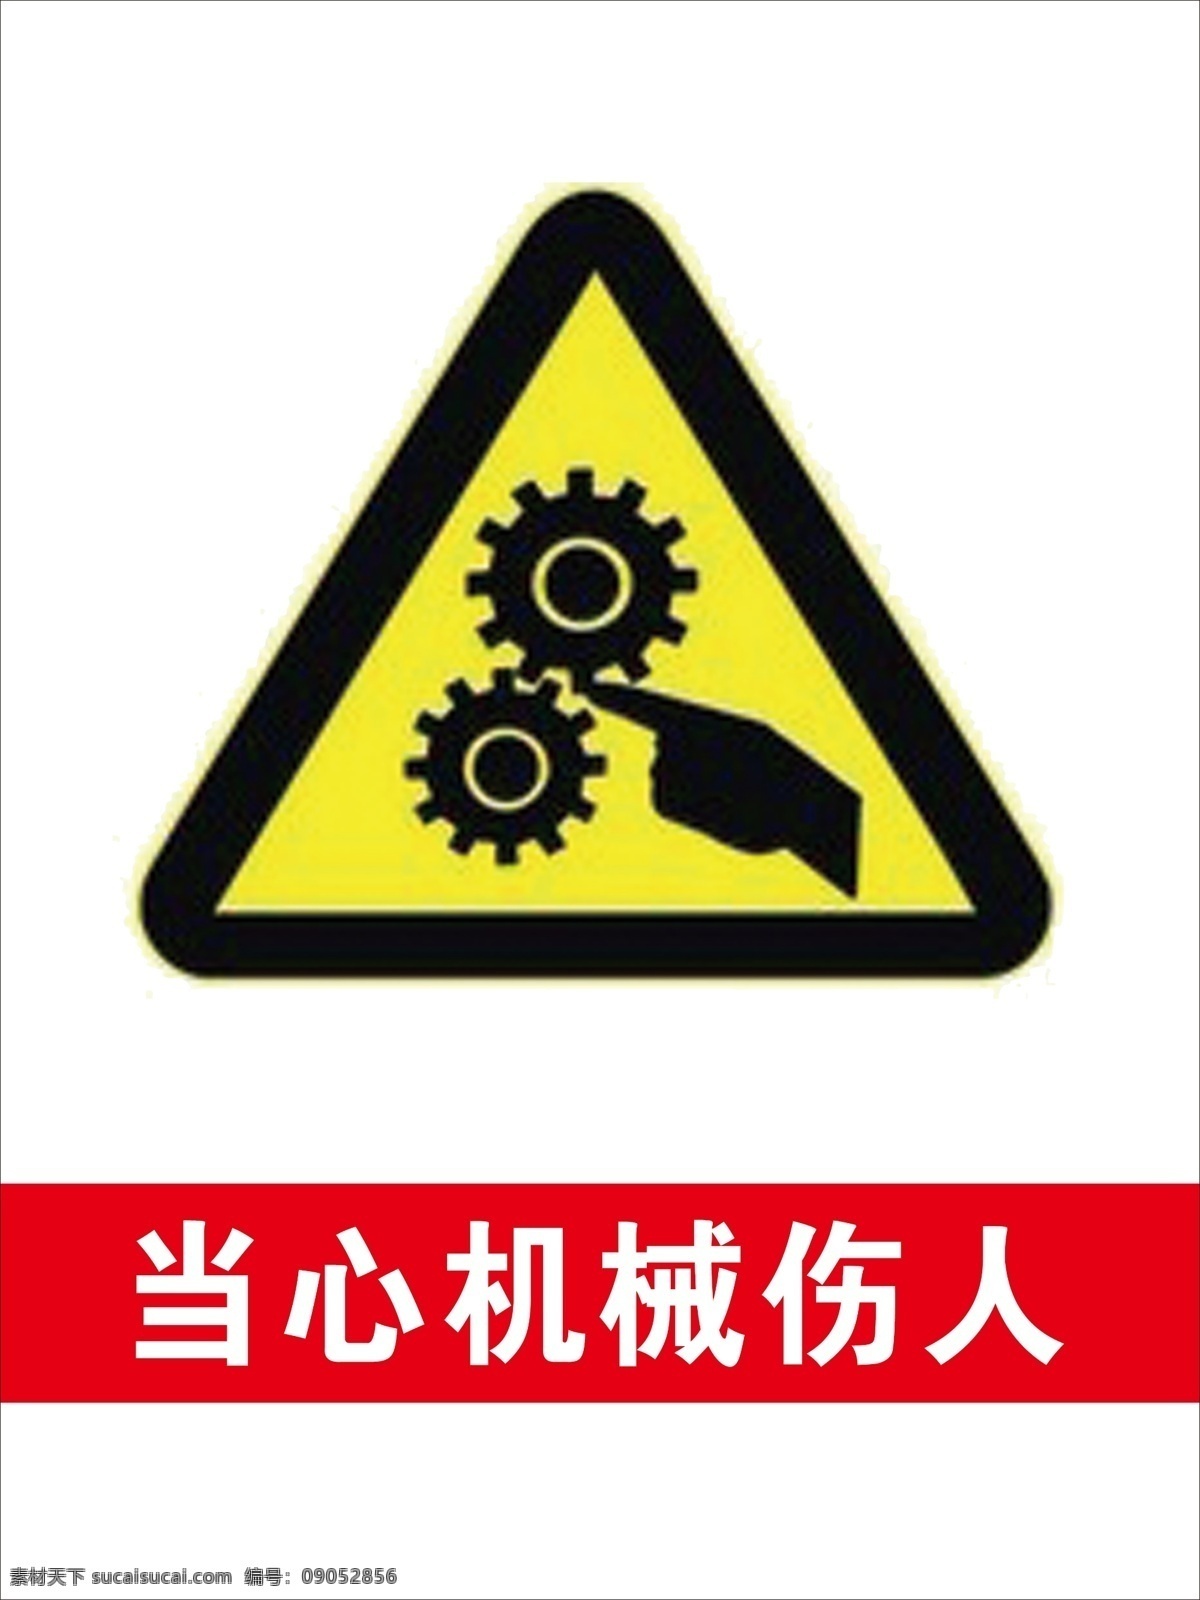 当心 机械 伤人 黄色 警告 标志 当心机械伤人 黄色警告标志 警告标志素材 当心齿轮伤人 安全警告标示 生活百科 生活用品